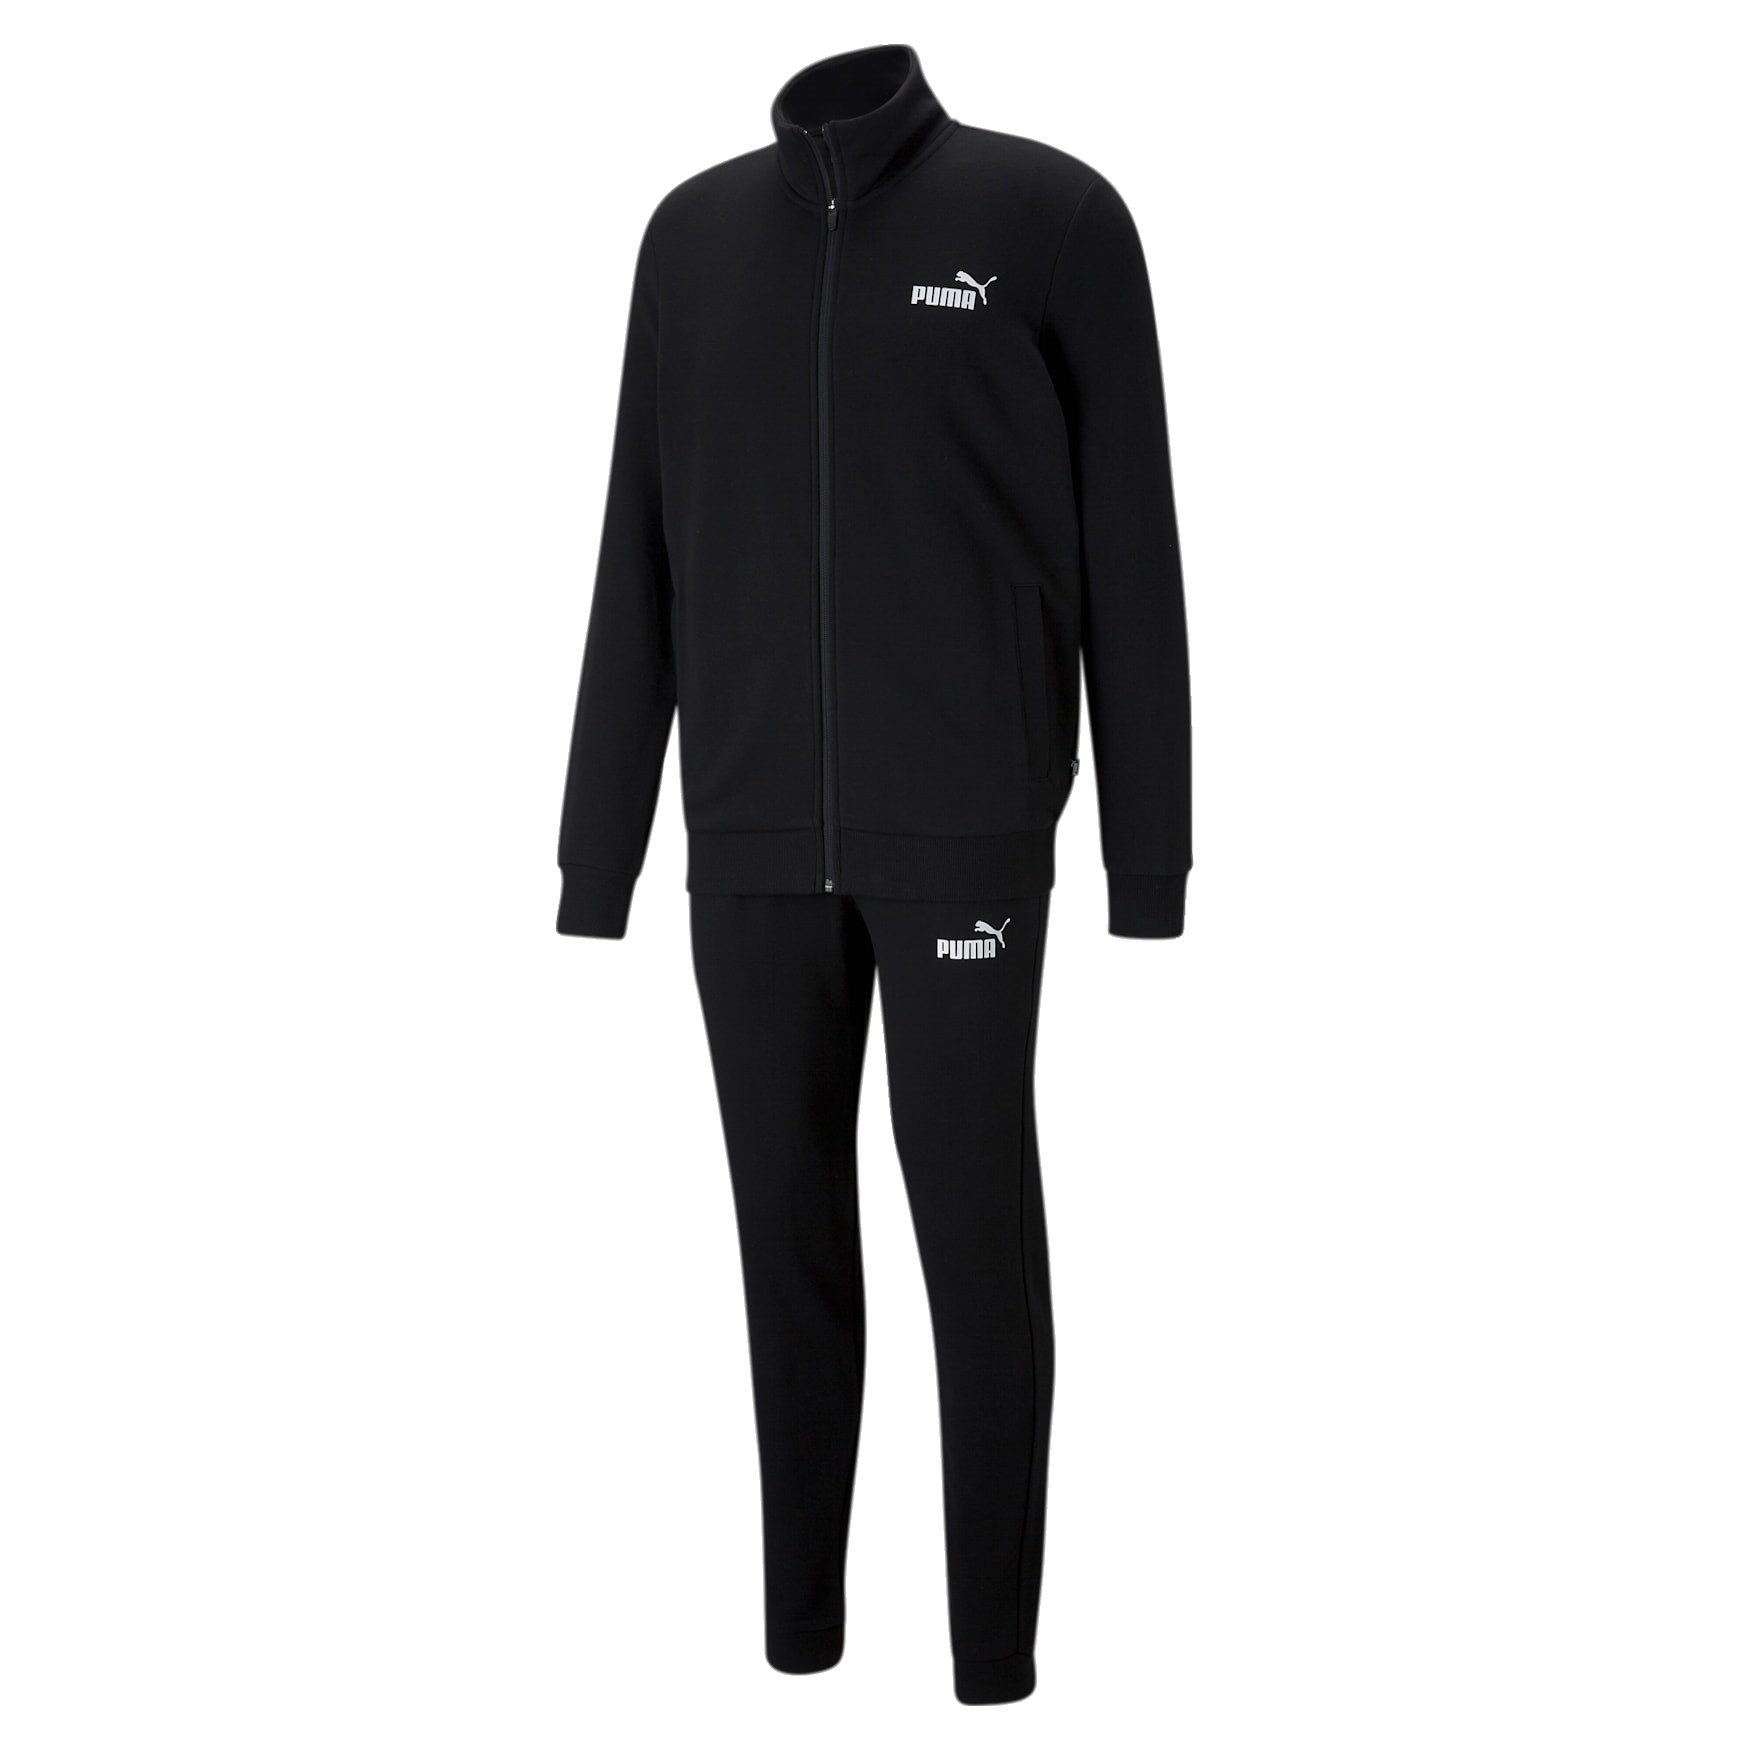 Puma Clean Sweat Suit TR(Black) - Manelsanchezstyle.com